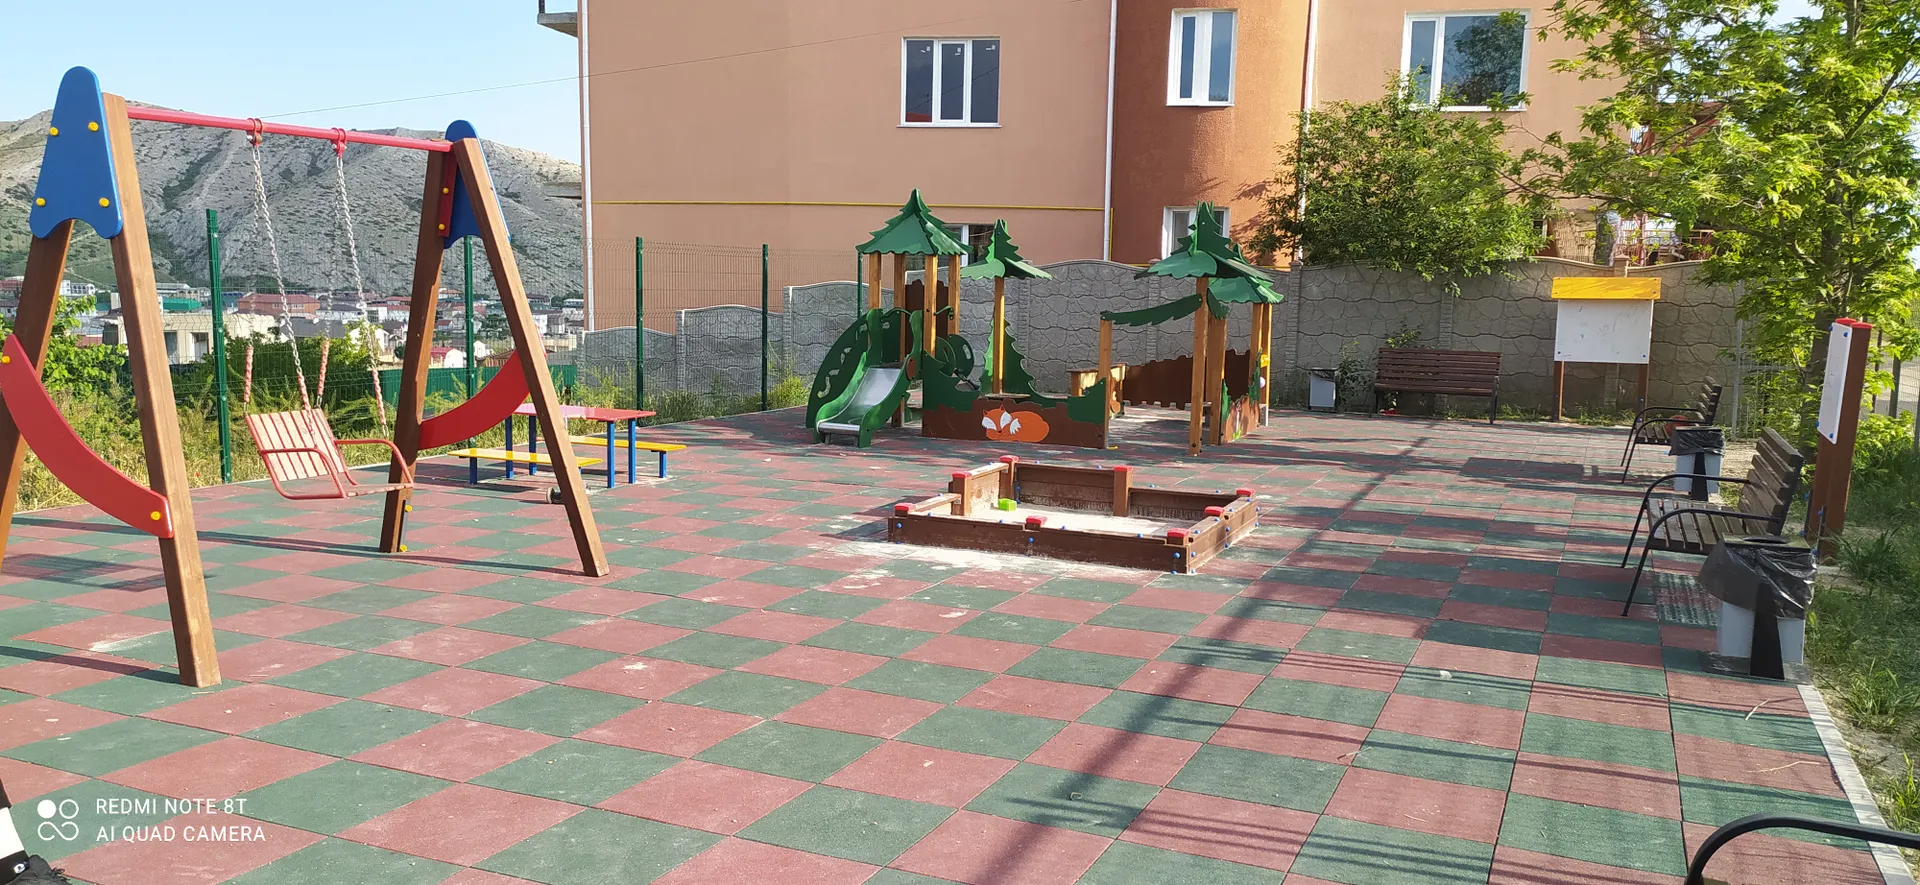 Детская площадка в общем дворе